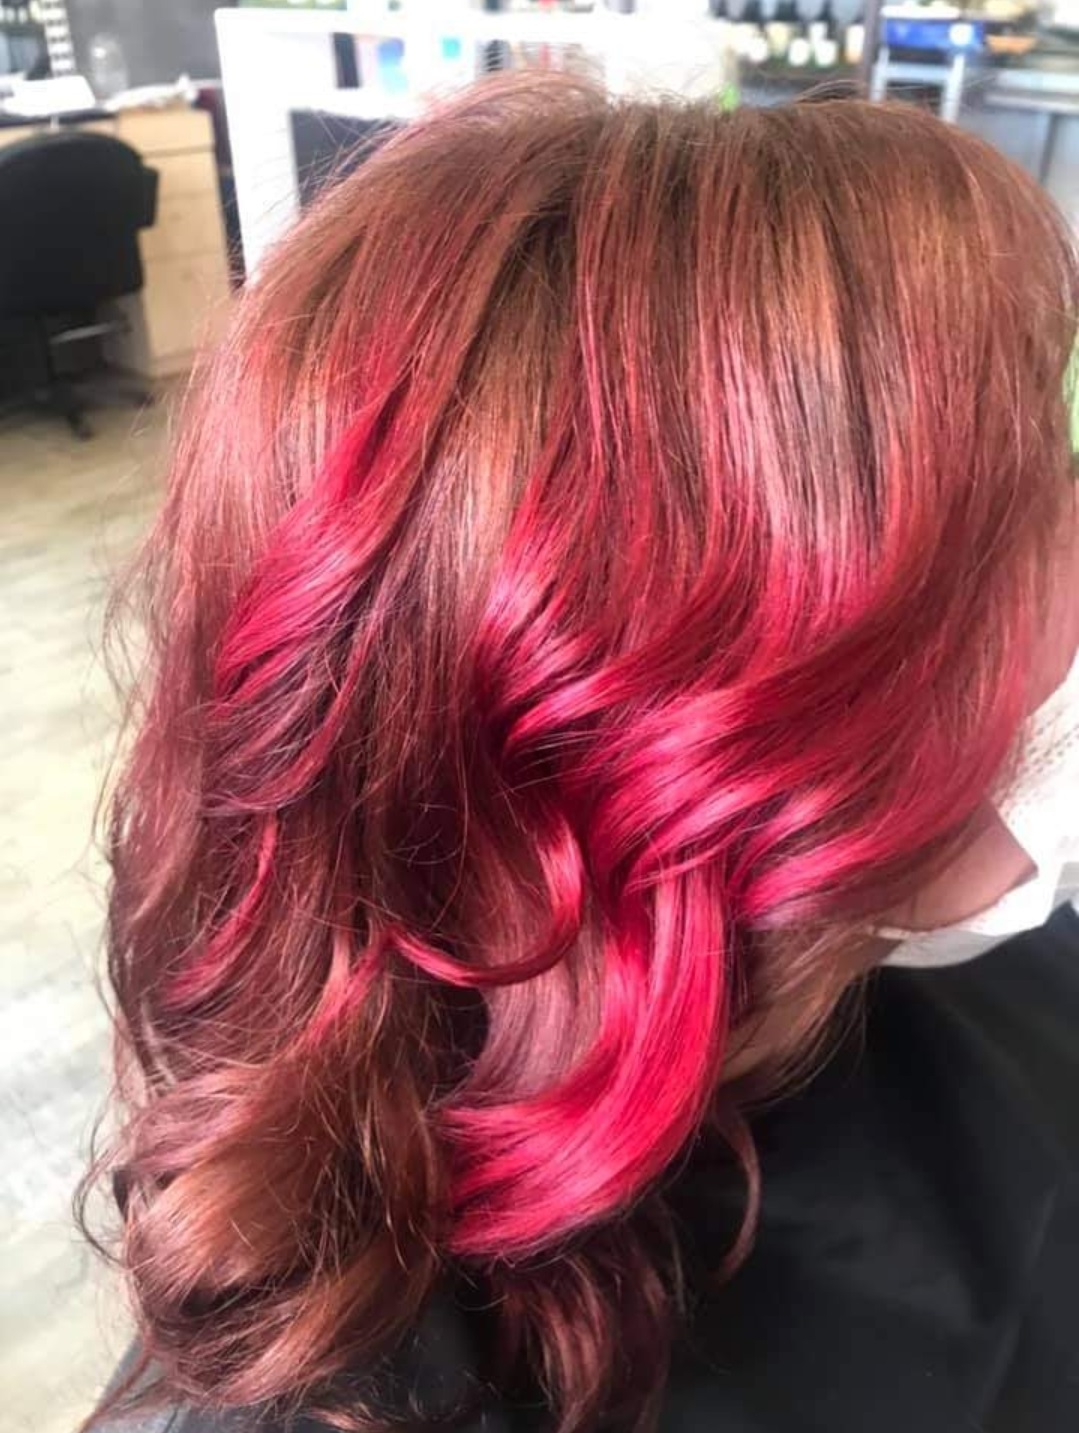 salon de coiffure golfe juan-coloration rose cannes-coloration antibes-coupe de cheveux vallauris-coloration bleue le cannet-coiffeur alpes-maritimes